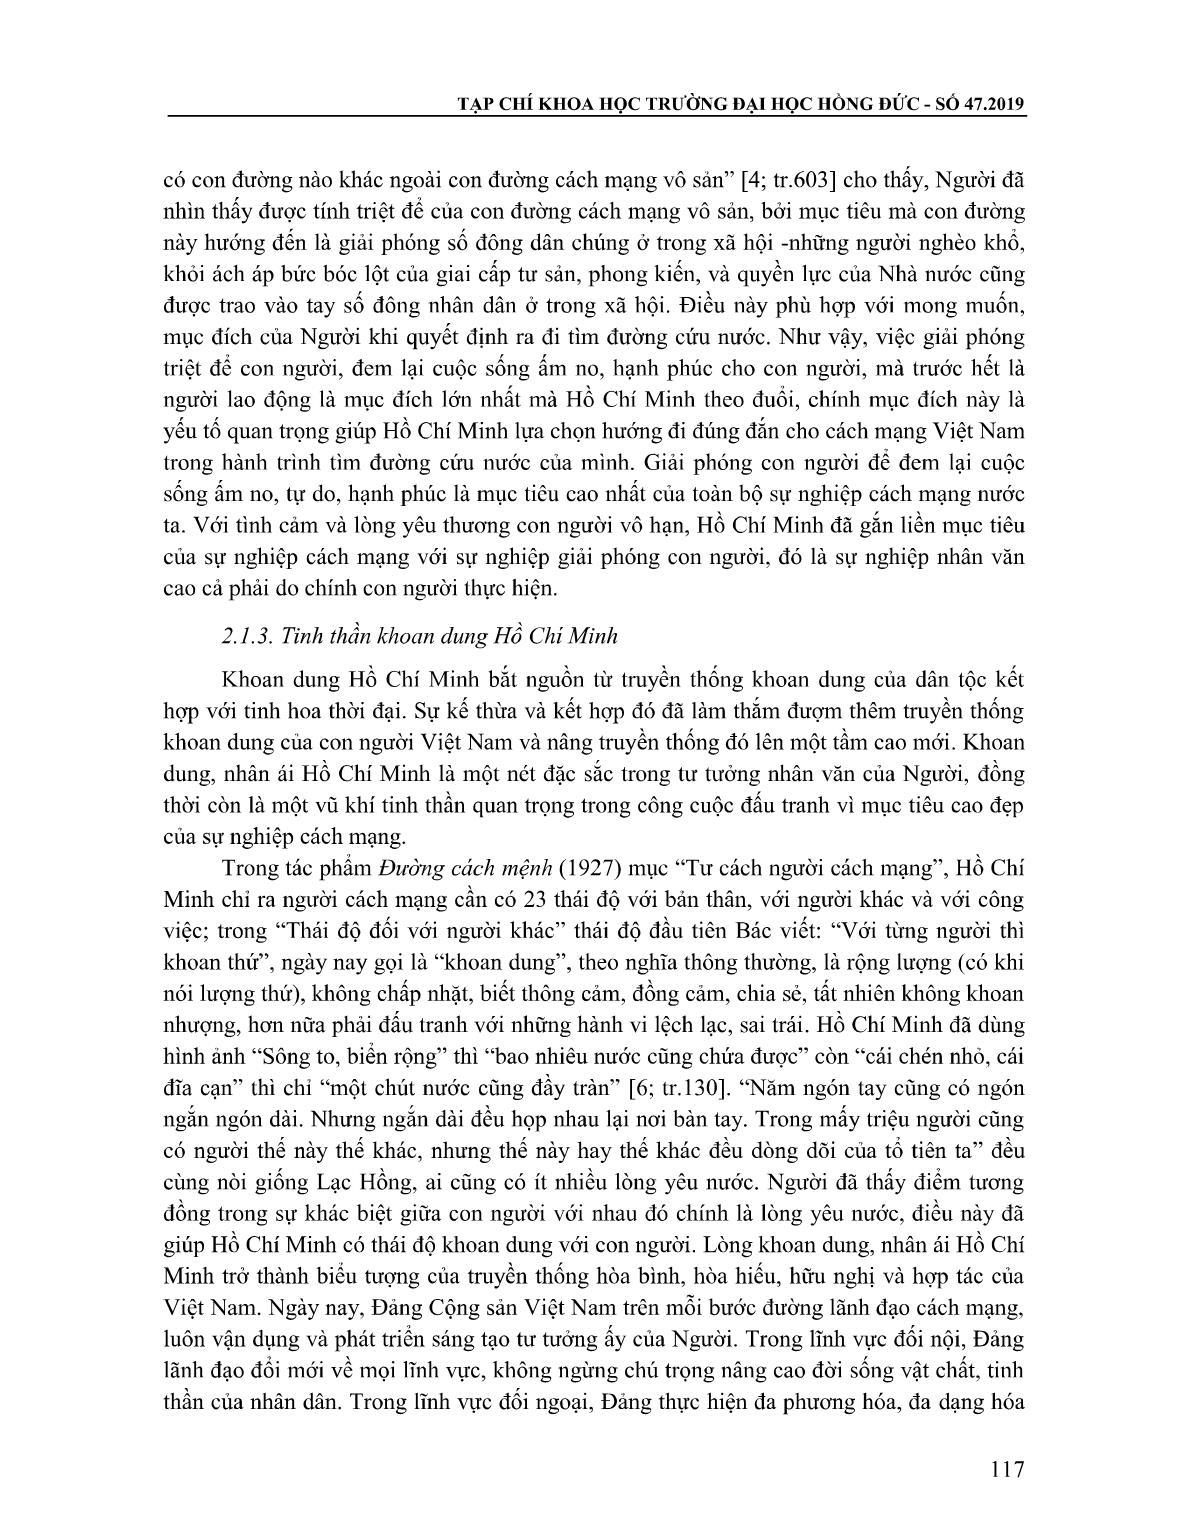 Giáo dục tư tưởng nhân văn Hồ Chí Minh cho sinh viên Trường Đại học Hồng Đức thông qua môn học Tư tưởng Hồ Chí Minh trang 4